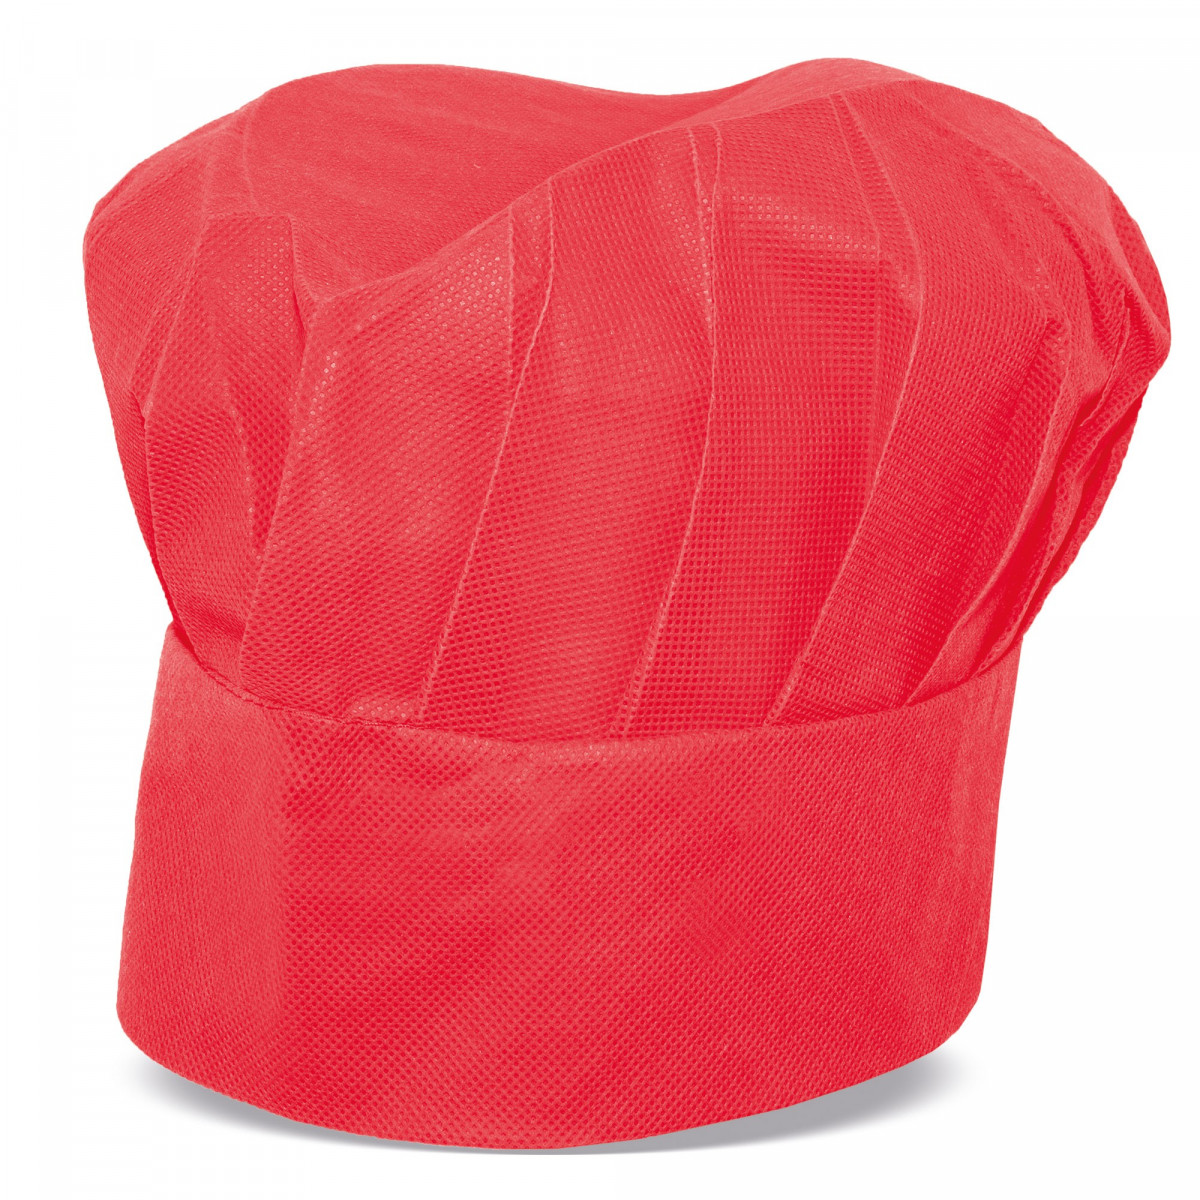 Cappello da Chef Red